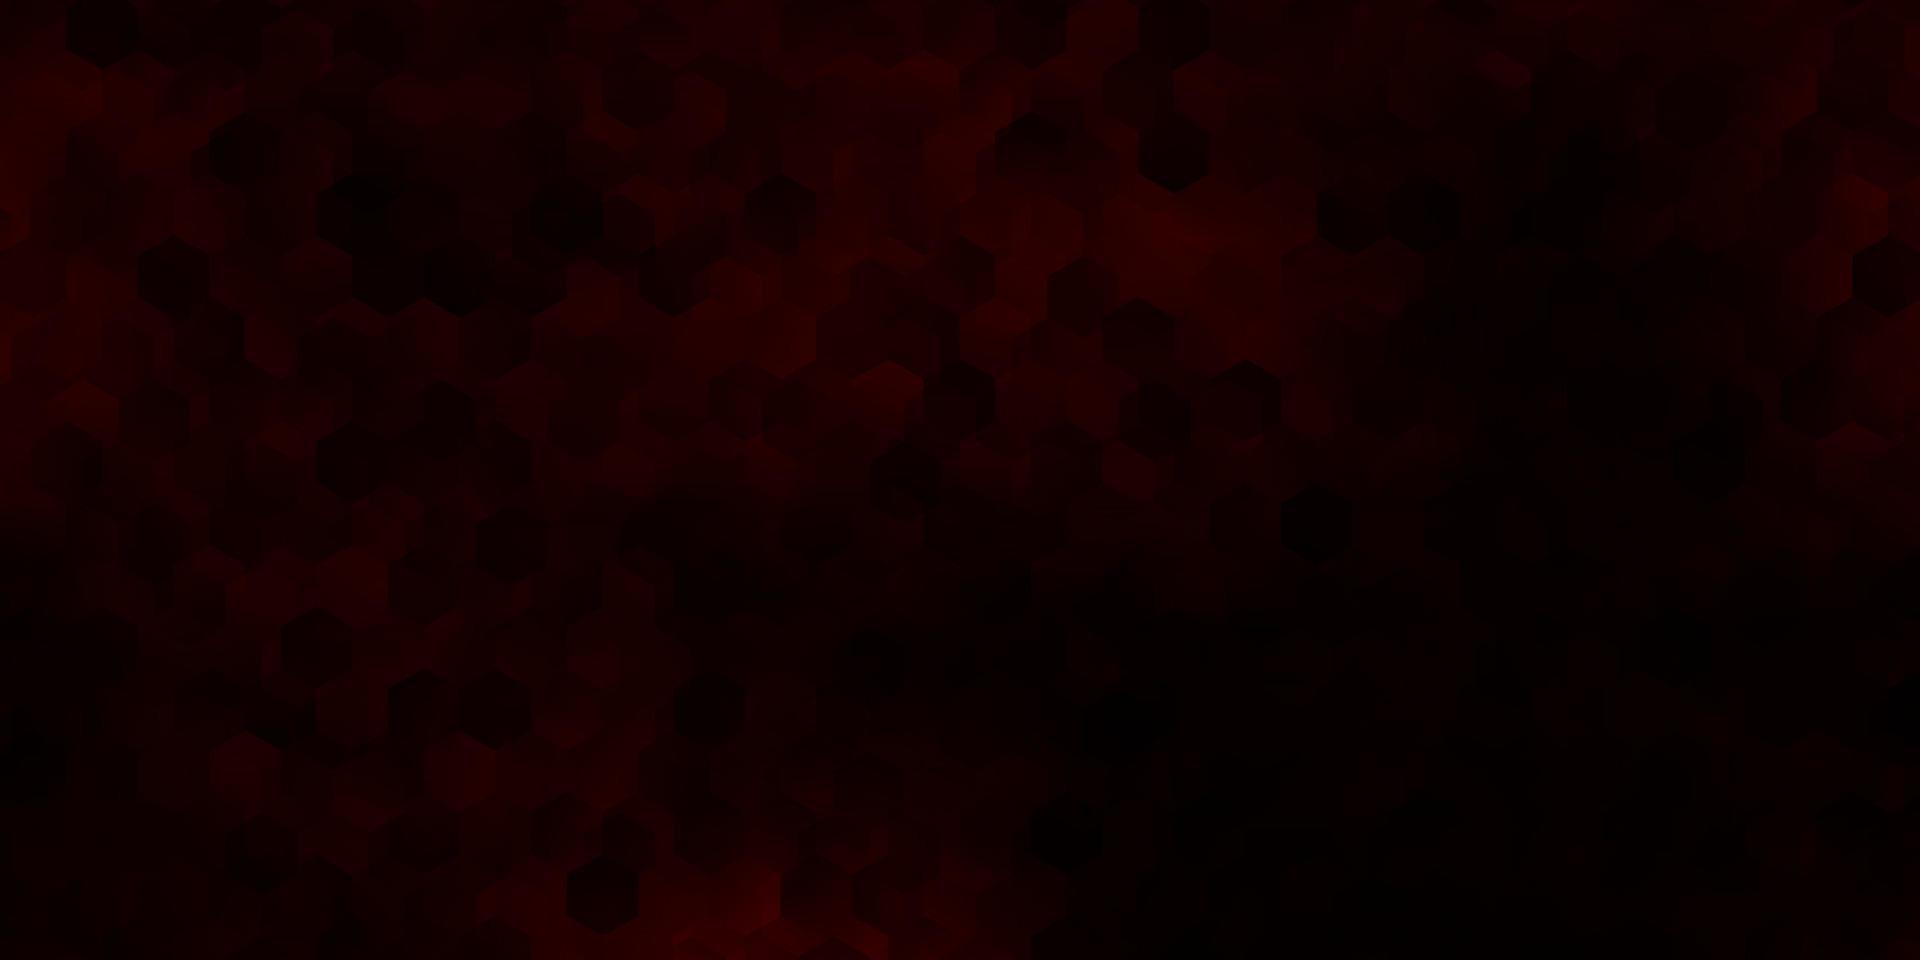 cubierta de vector rojo oscuro con hexágonos simples.